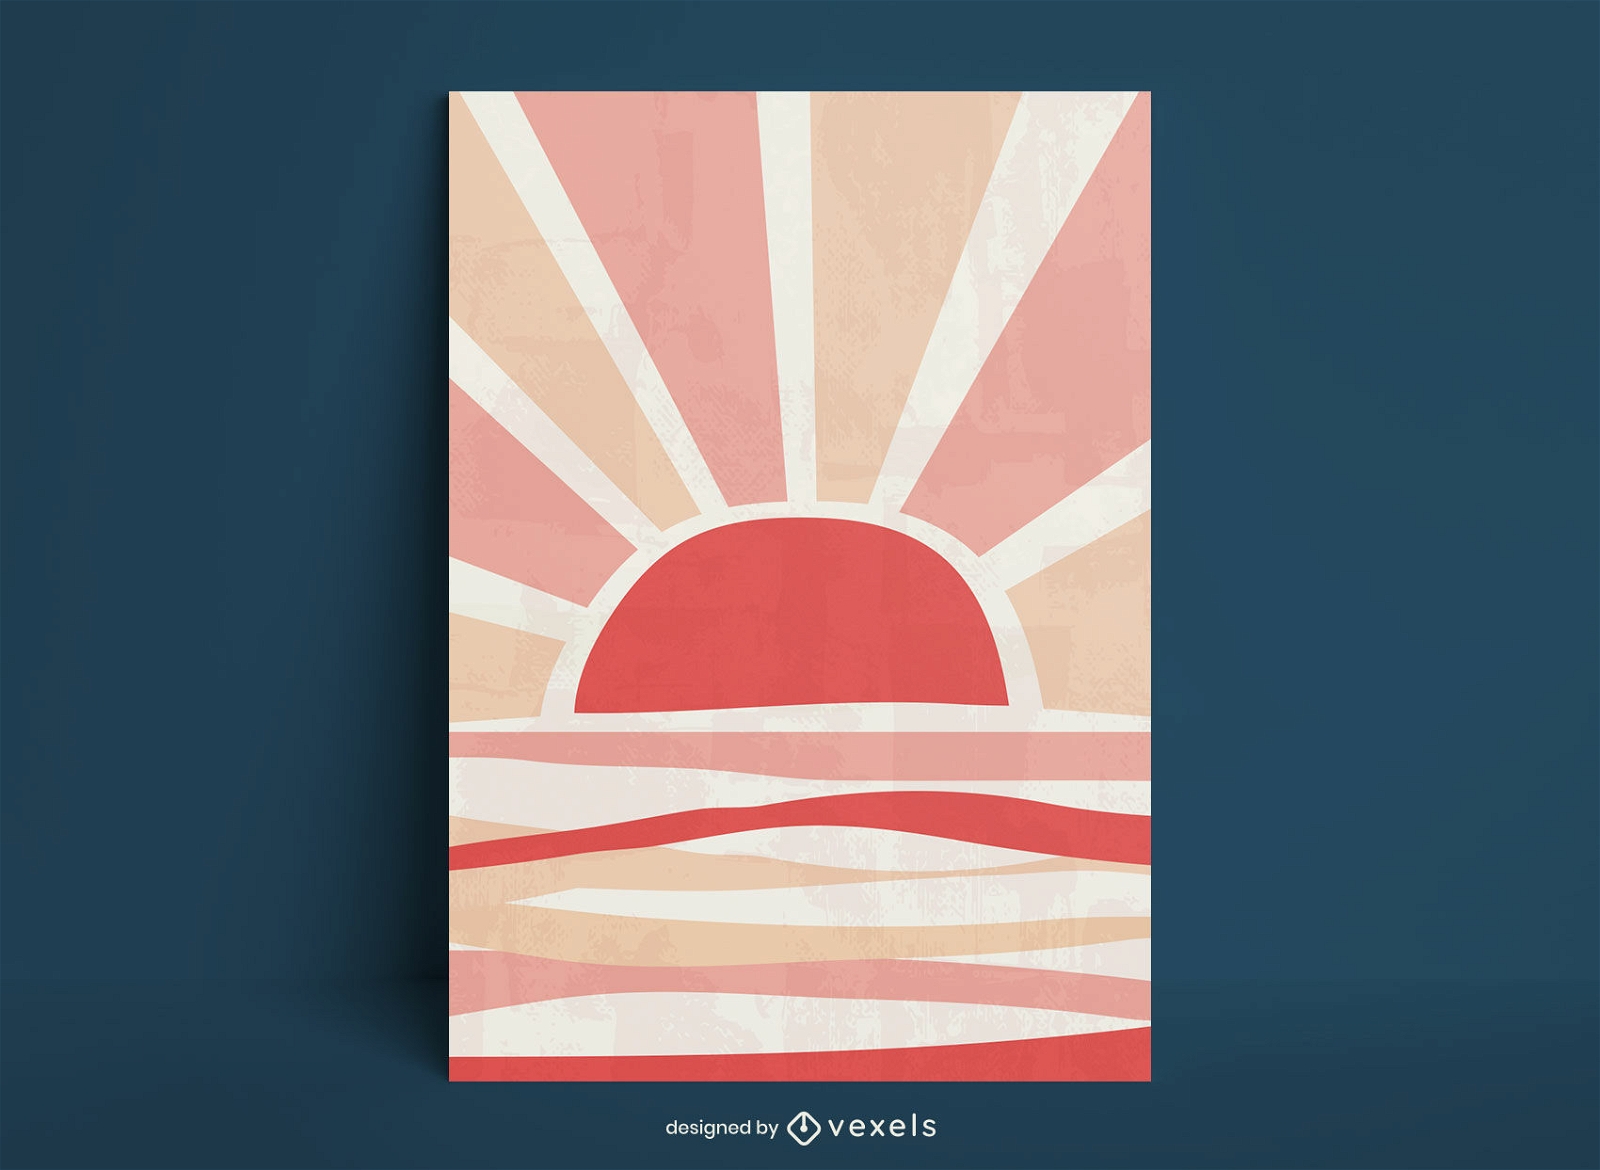 P?r do sol no modelo de cartaz da natureza do horizonte